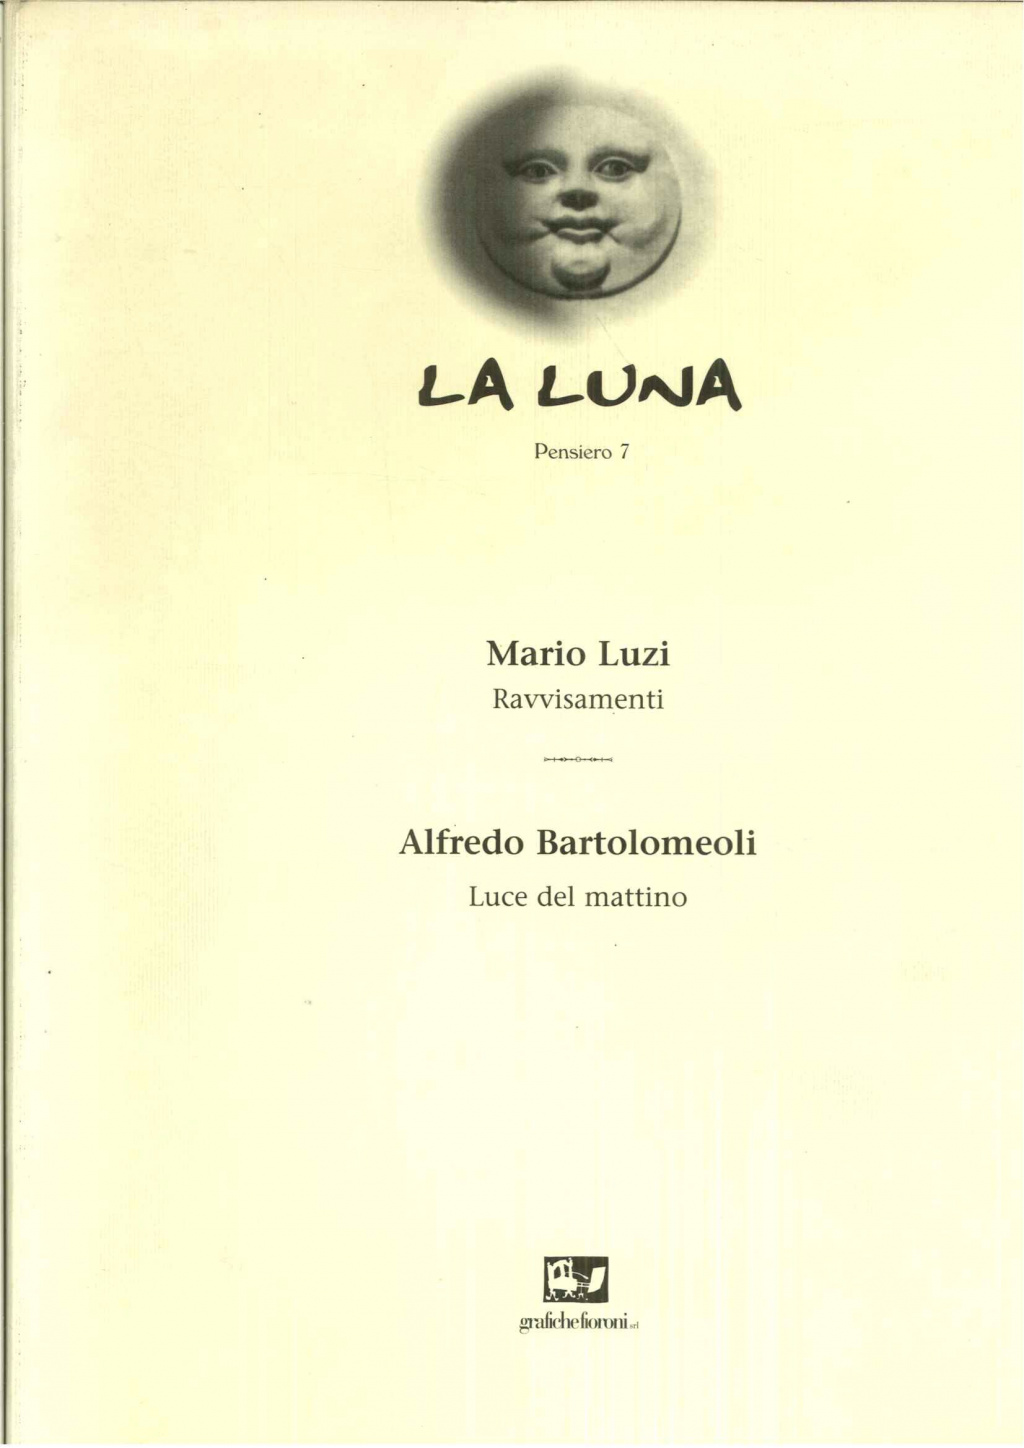 Mario Luzi, Ravvisamenti / Alfredo Bartolomeoli: Luce del mattino con Incisione originale